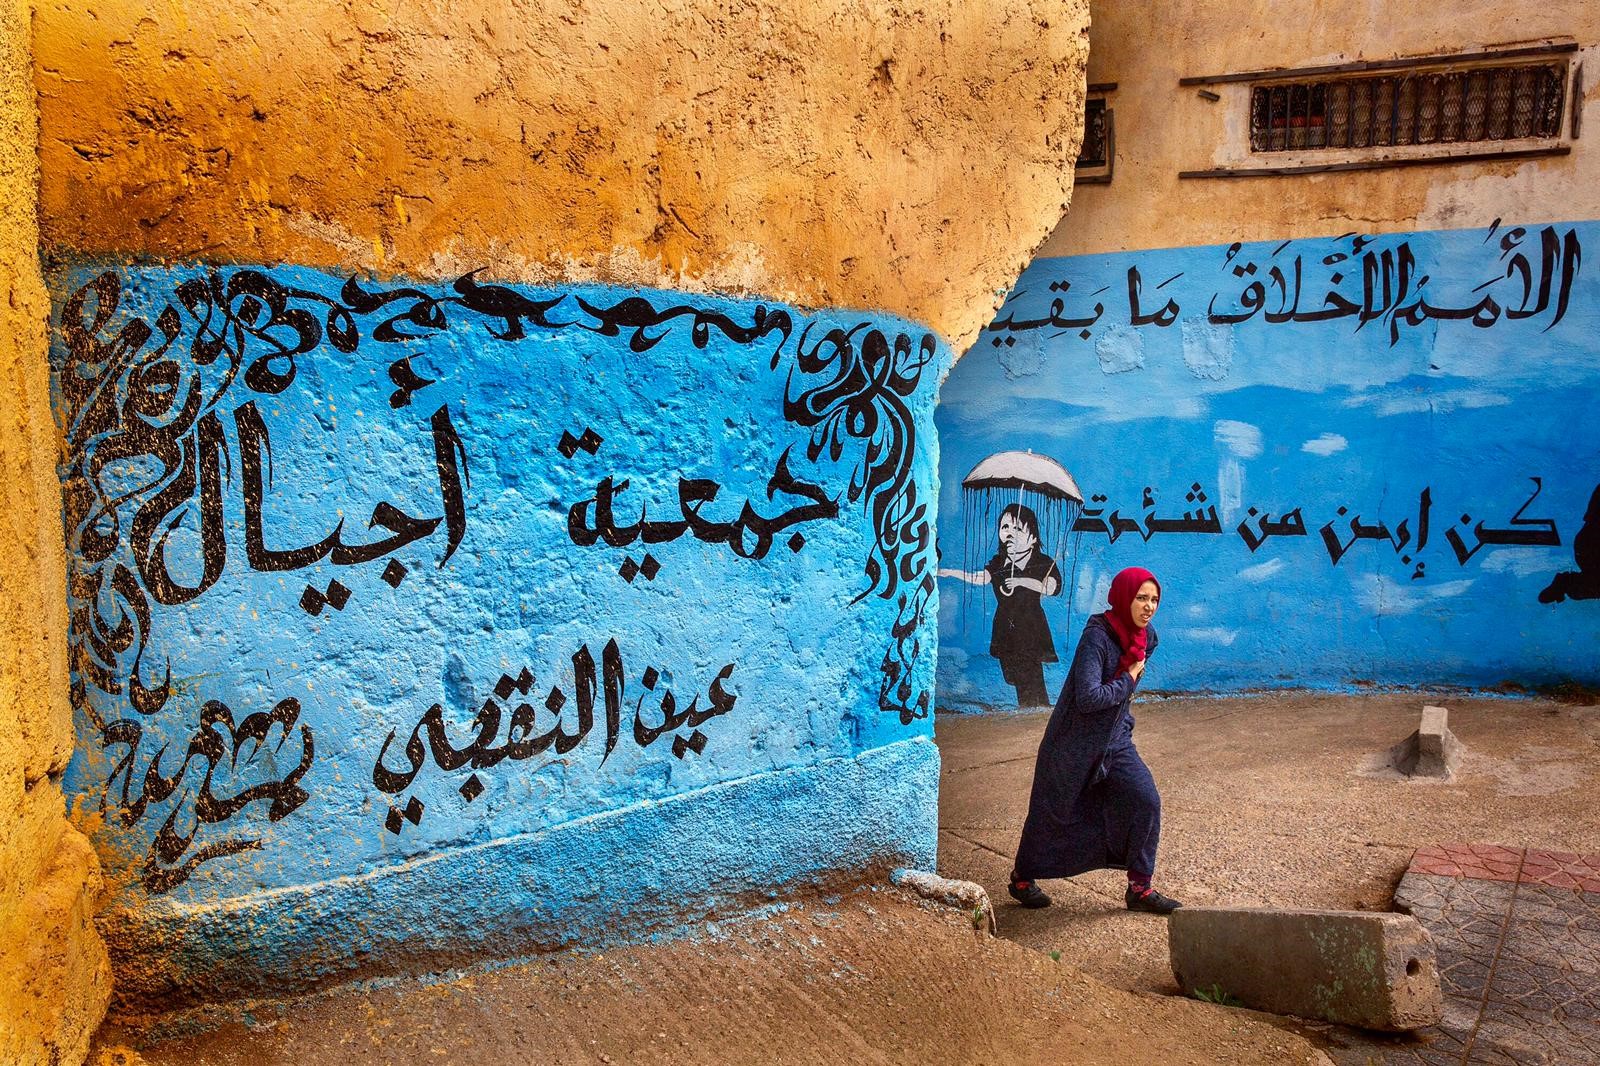 Morocco by Wayne Kaulbach